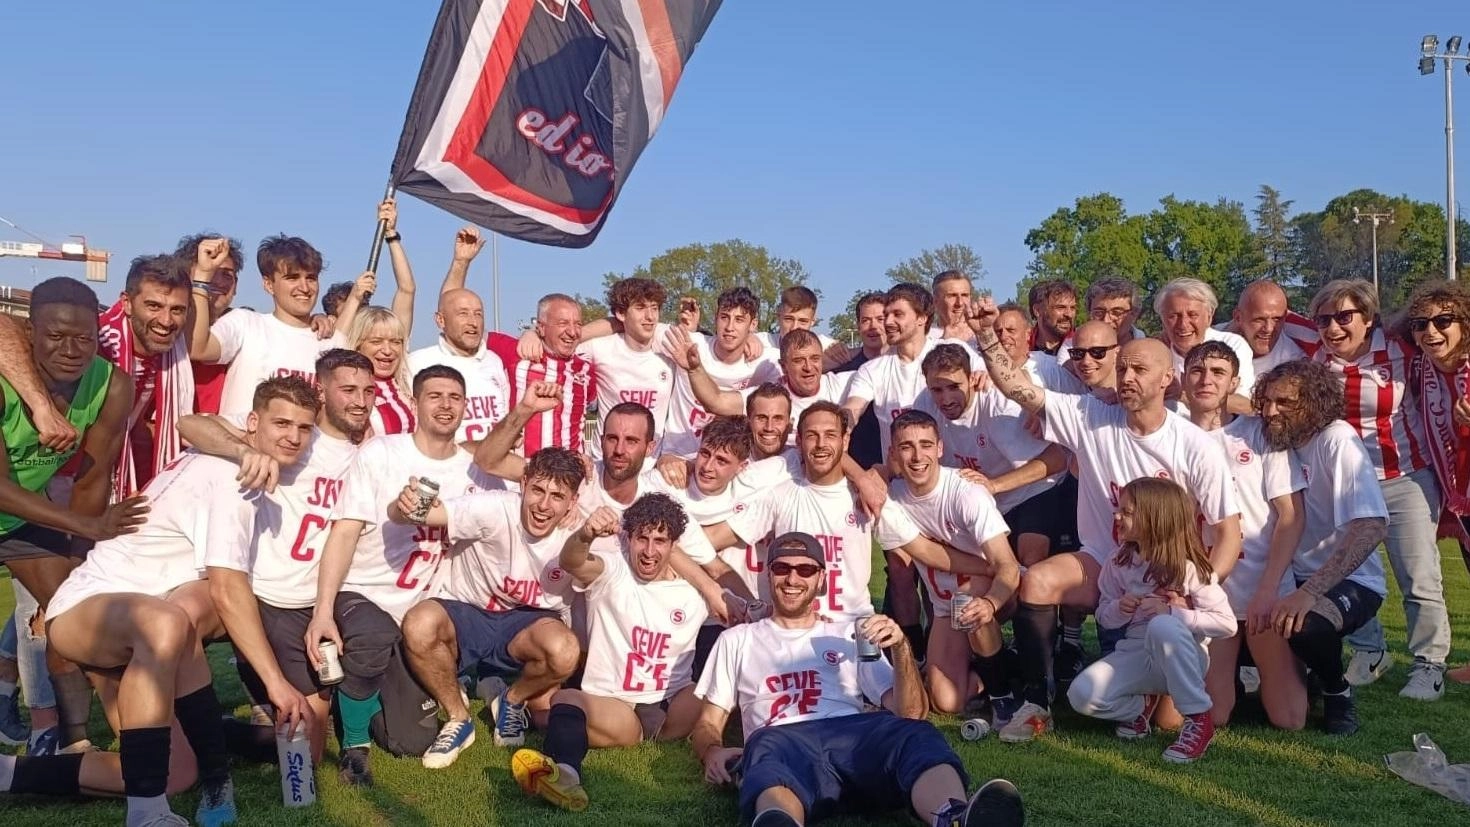 San Severino festeggia la promozione di due squadre sportive della Polisportiva Serralta: il calcetto torna in C2 e la Settempeda conquista la Promozione, scatenando la gioia dei tifosi e dell'amministrazione locale.